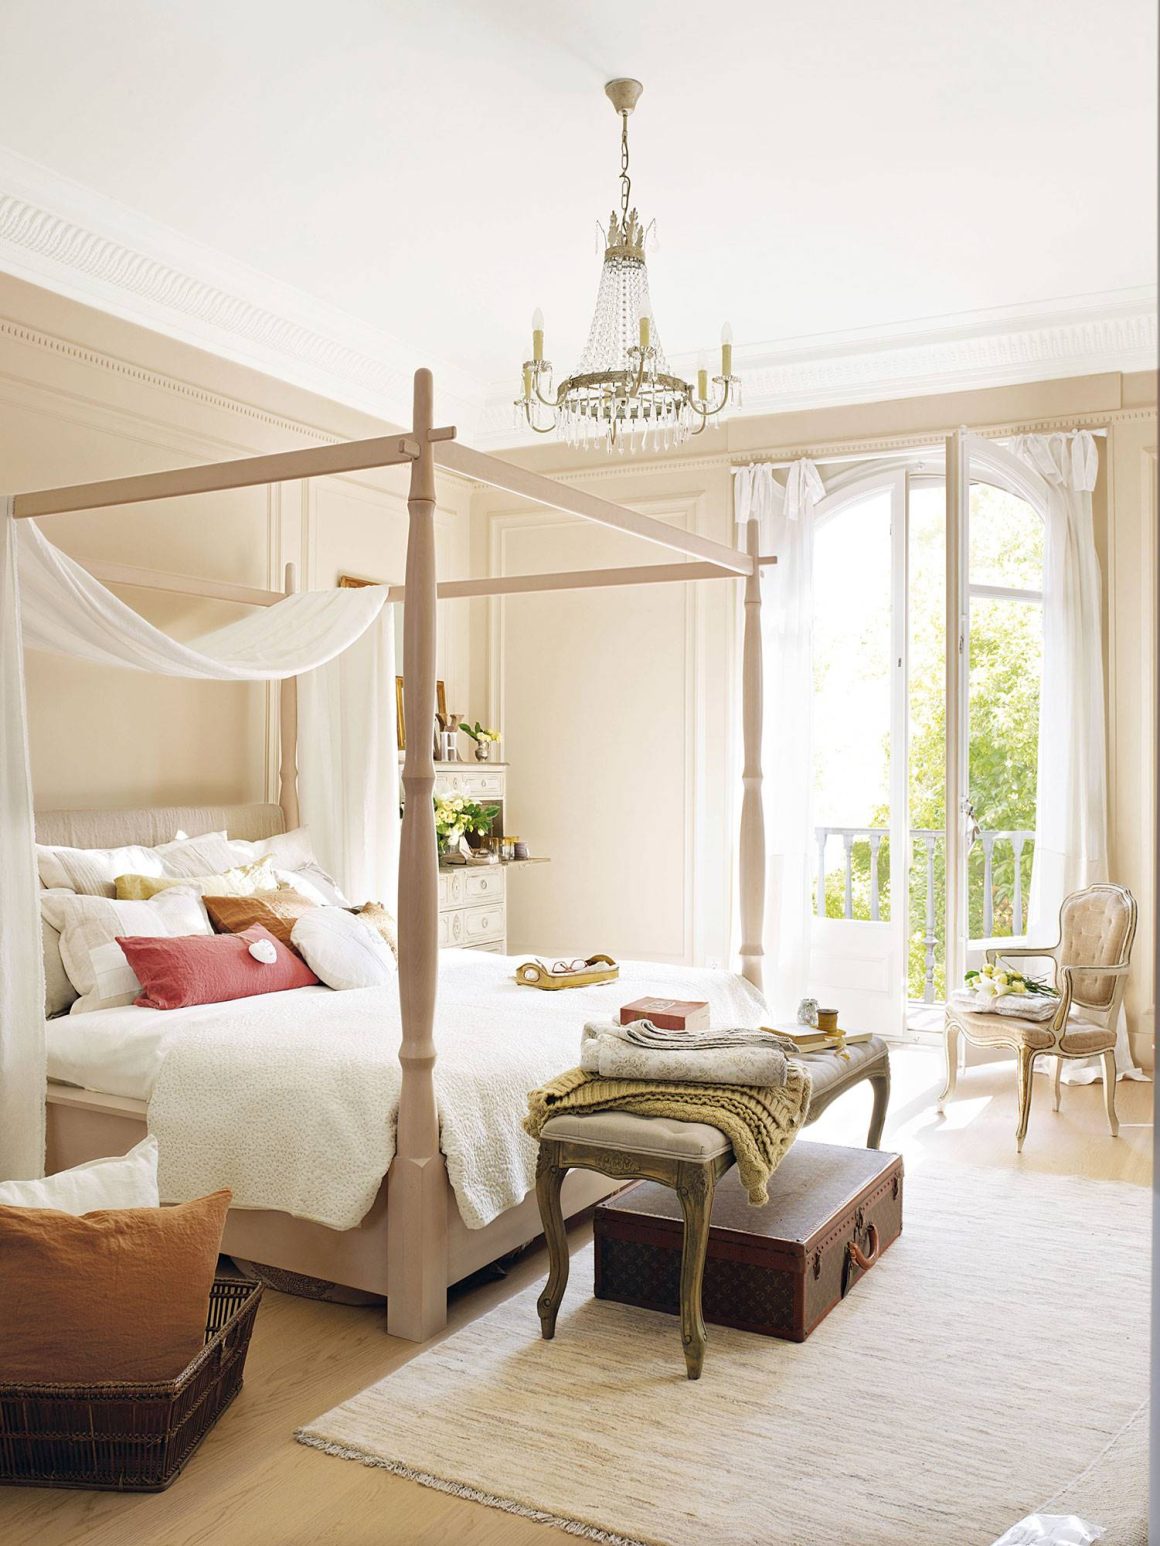 Un lit à baldaquin dans le chambre parentale de style mid-century